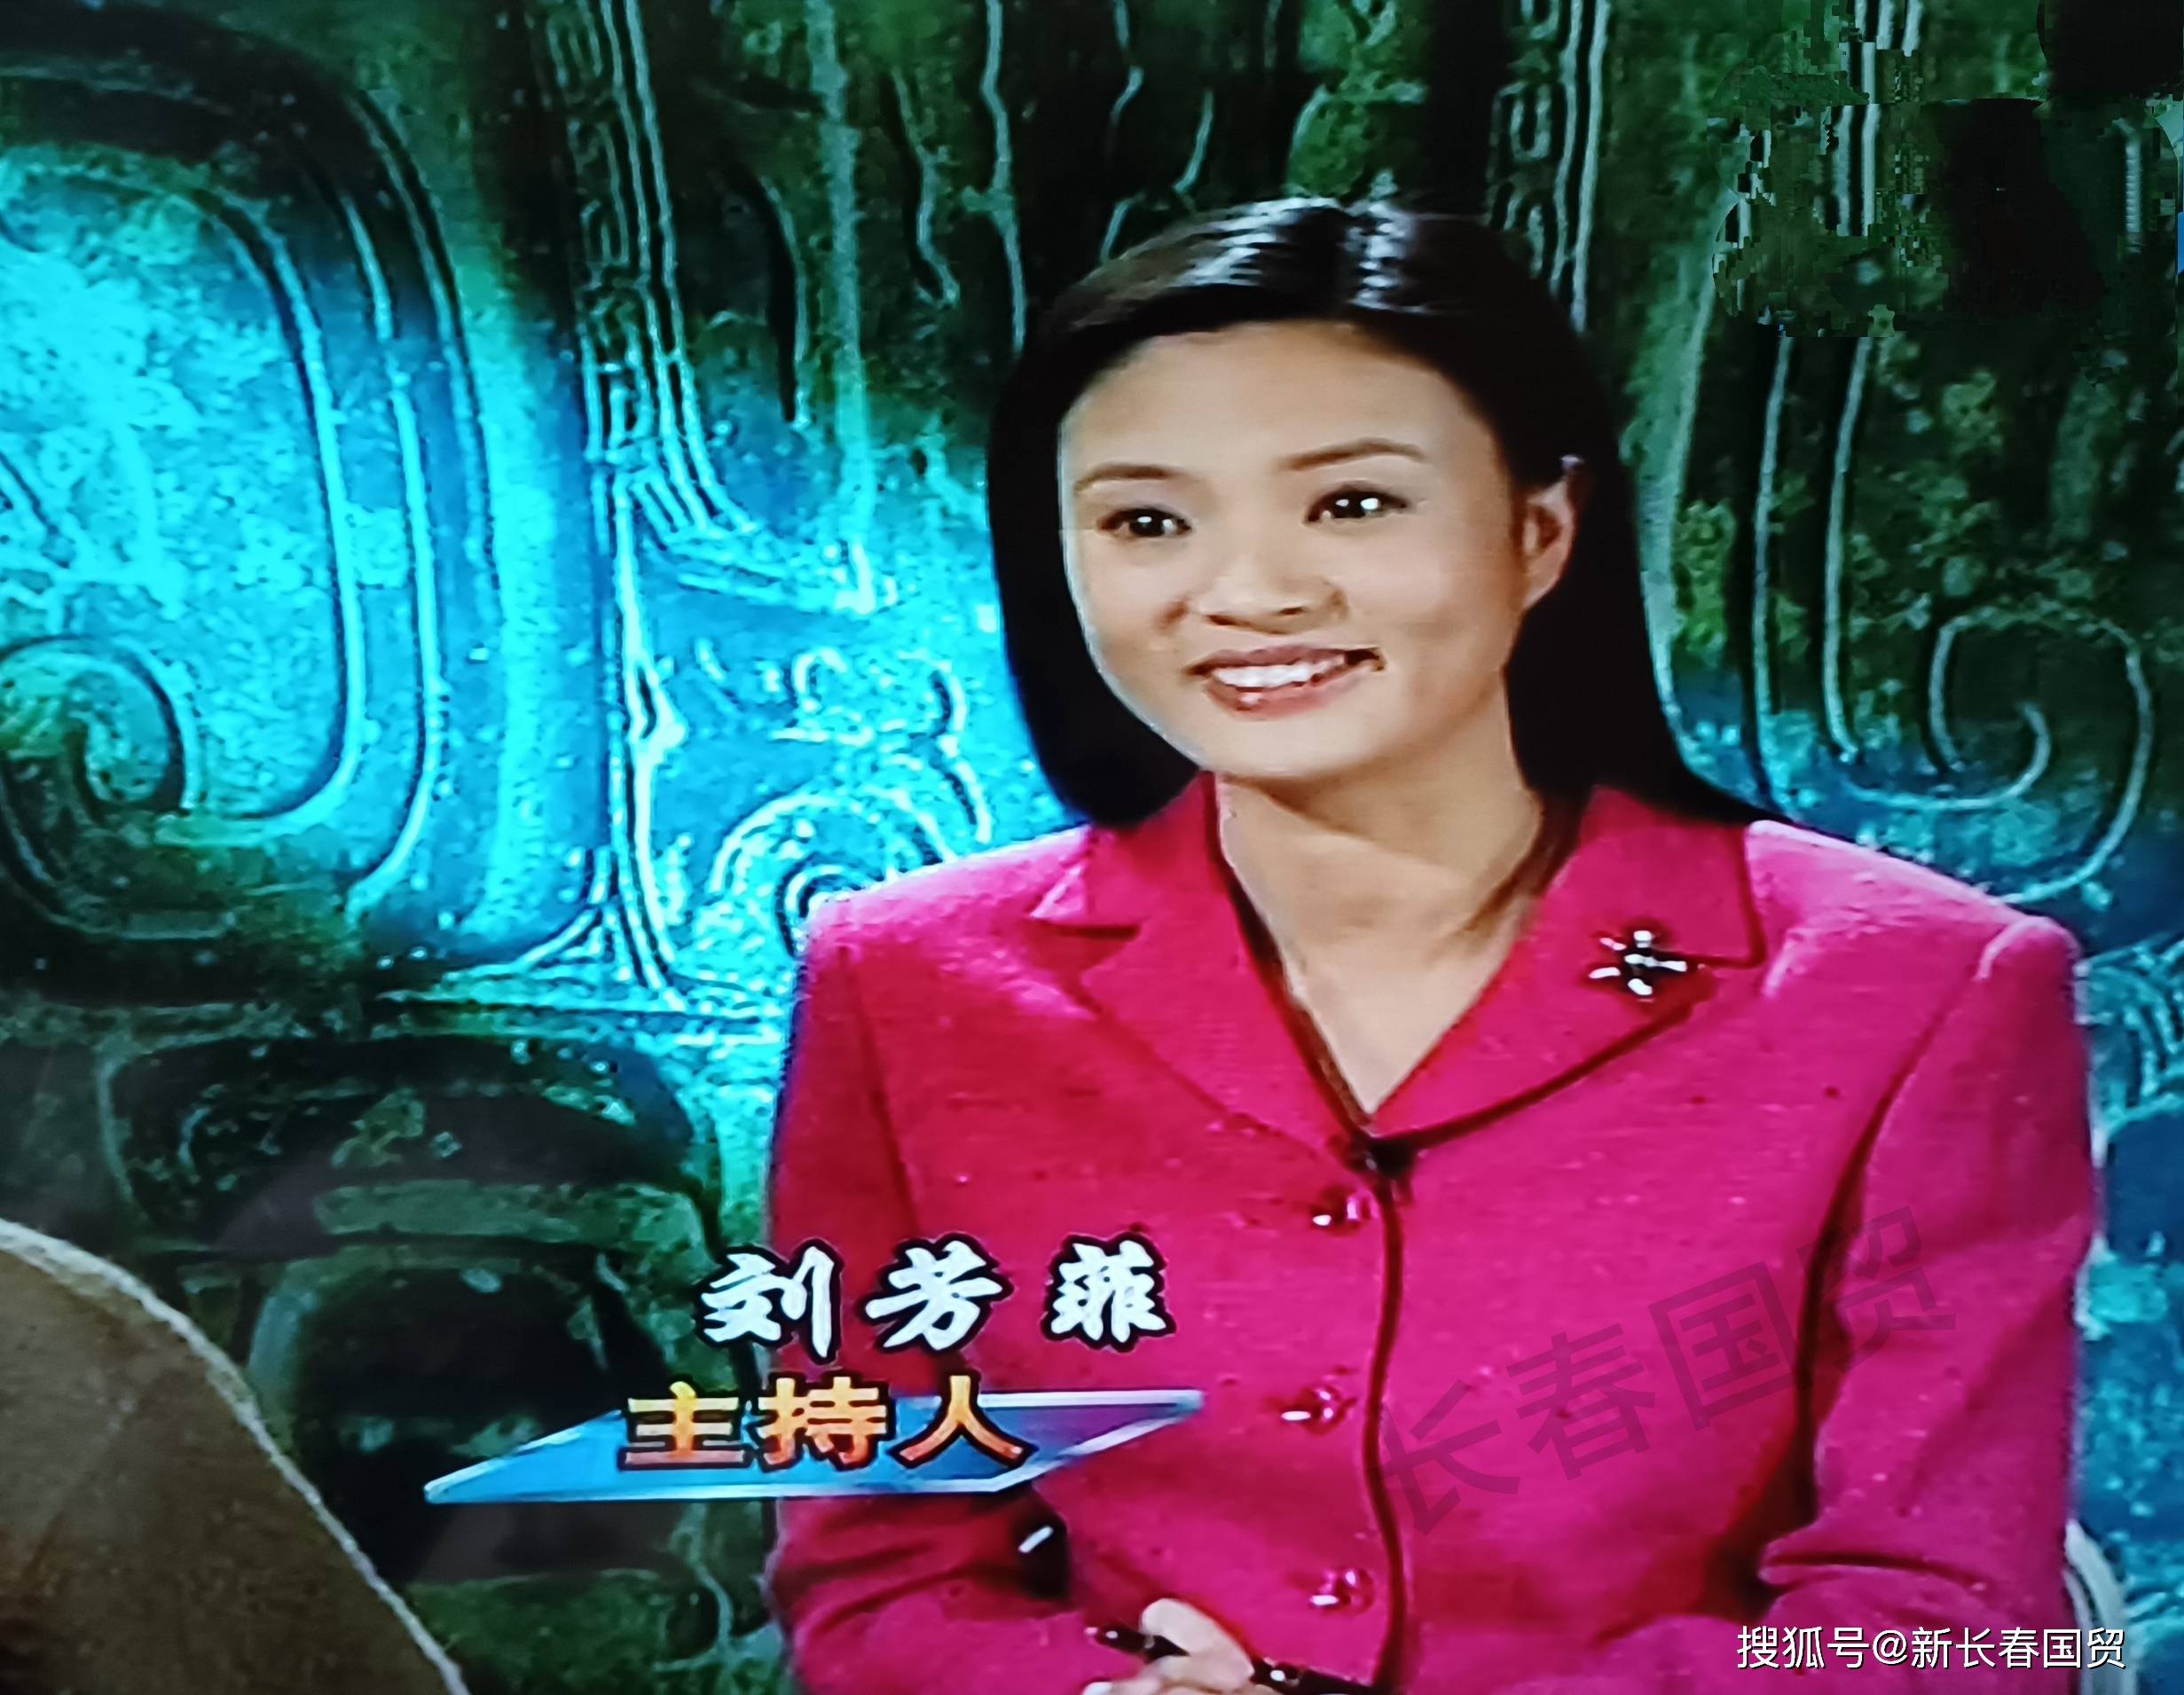 央视主持人刘芳菲20年前旧照曝光,长发披肩端庄文静气质好